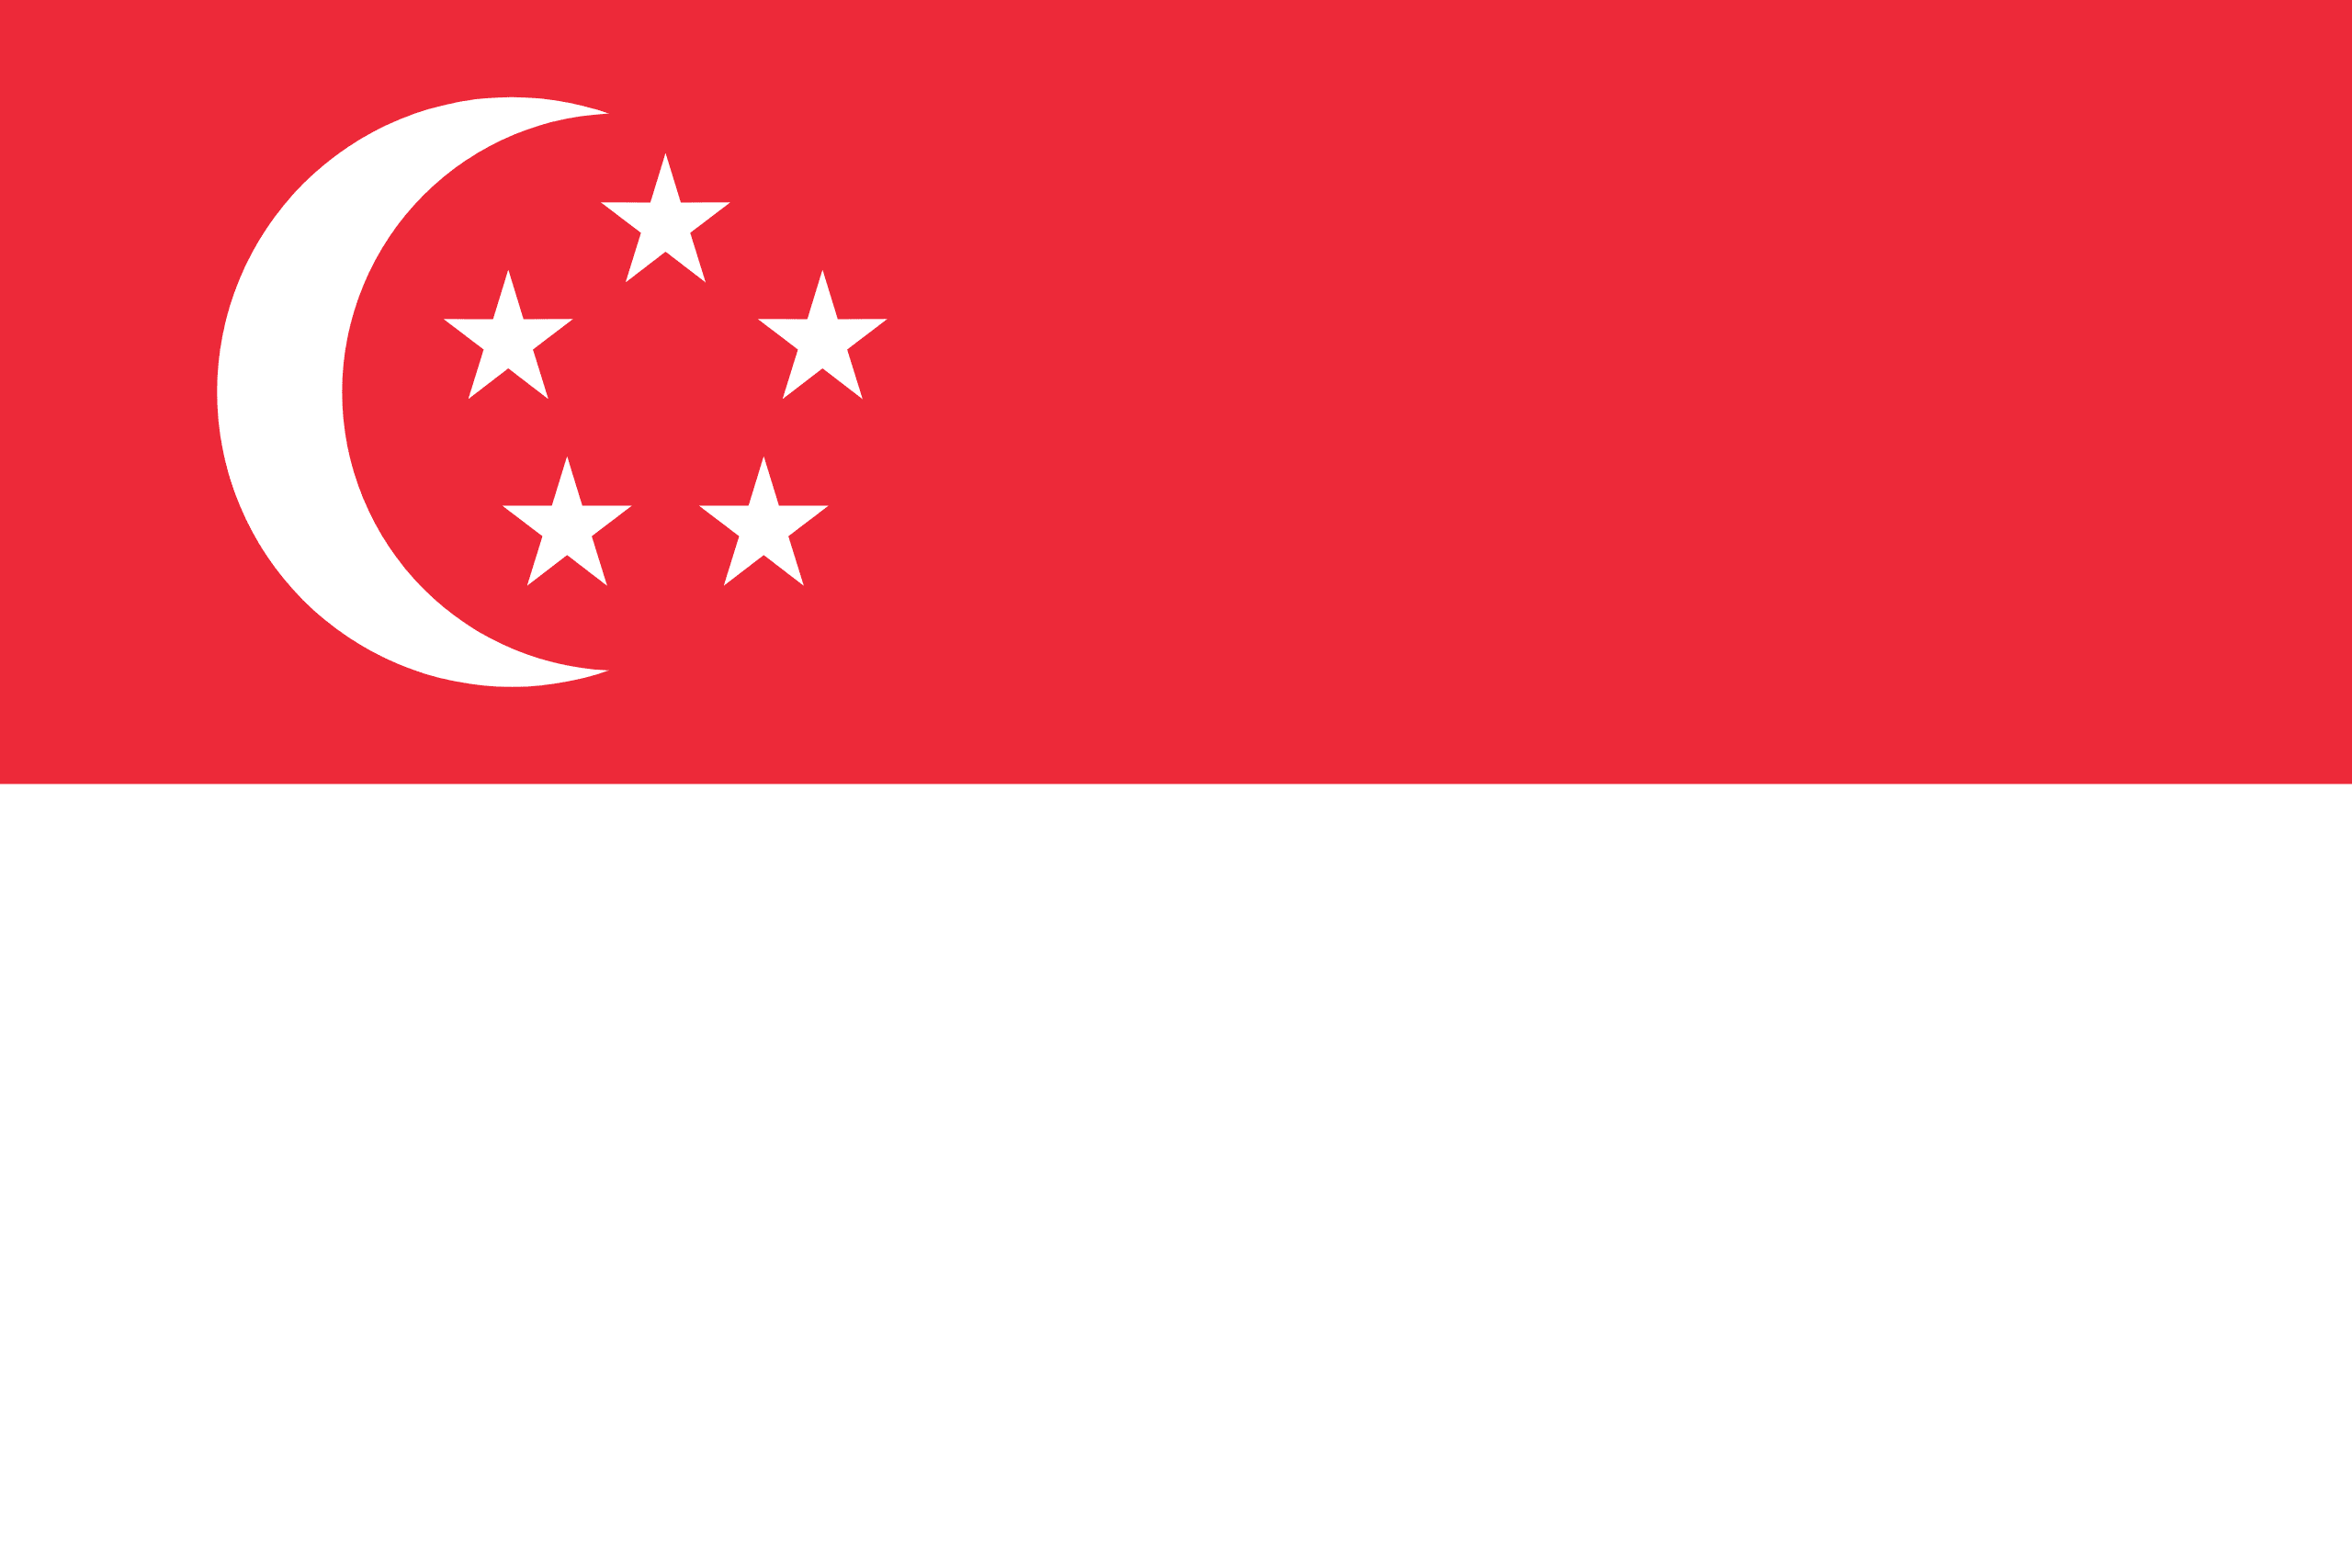 Σημαία της Σιγκαπούρης